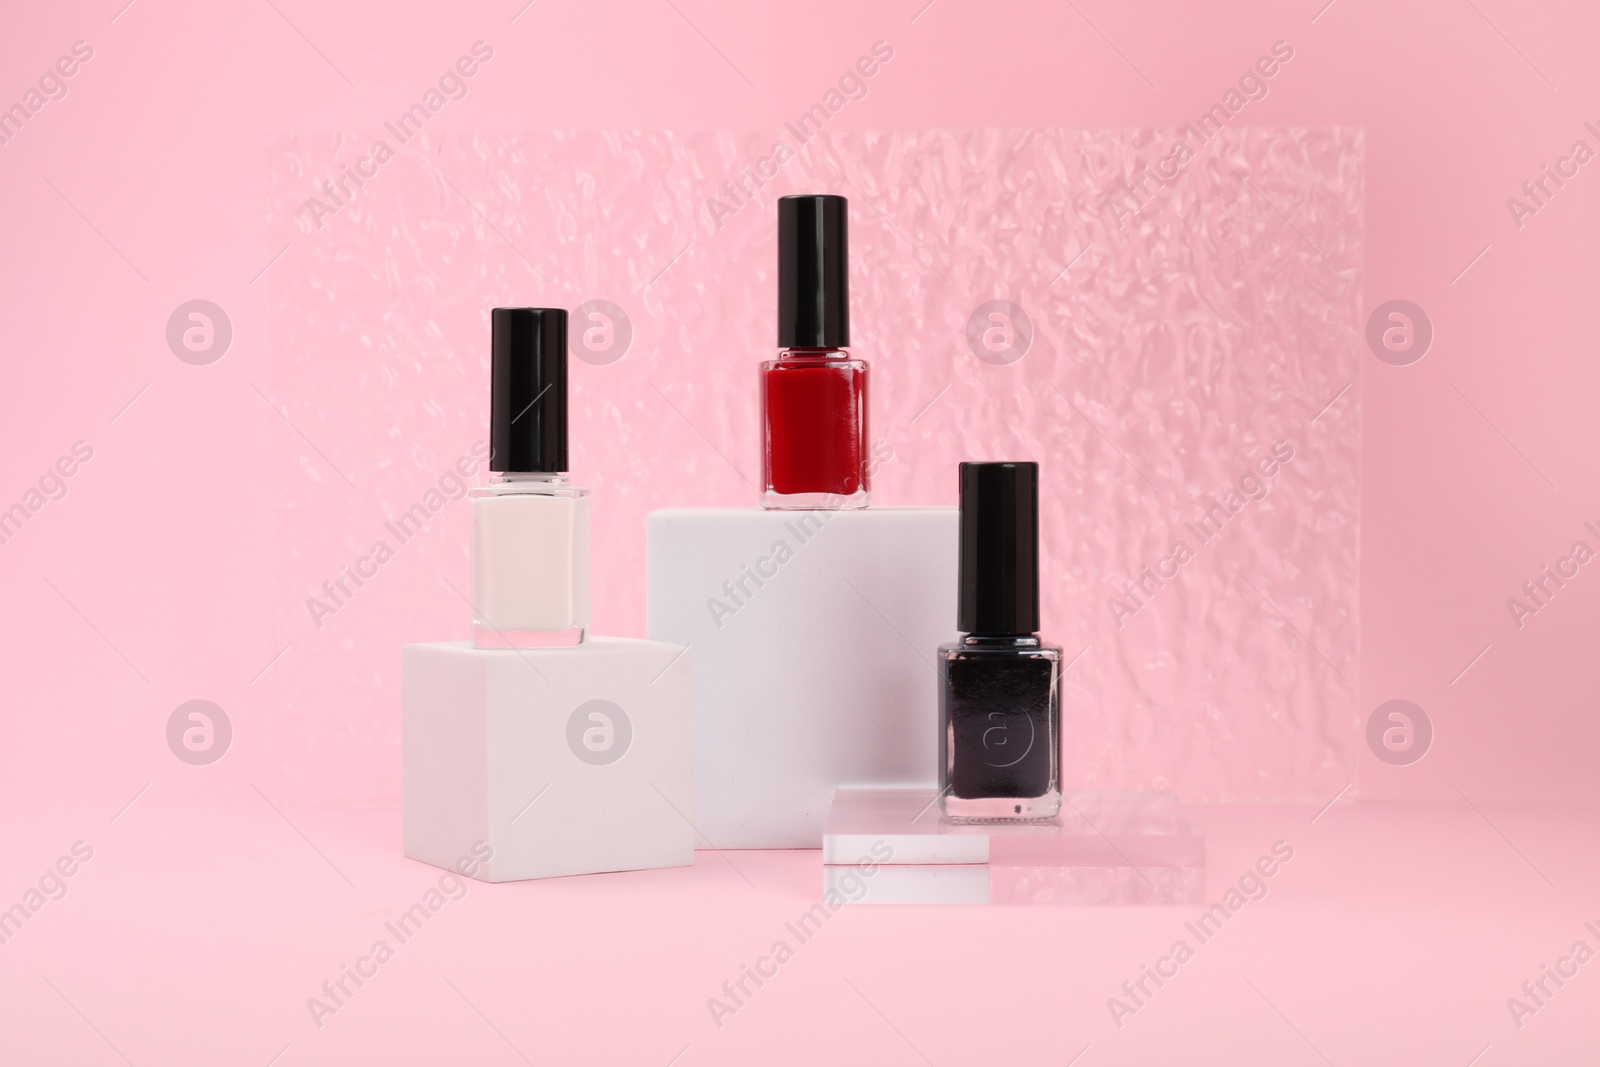 Photo of Stylish presentation of nail polishes on pink background